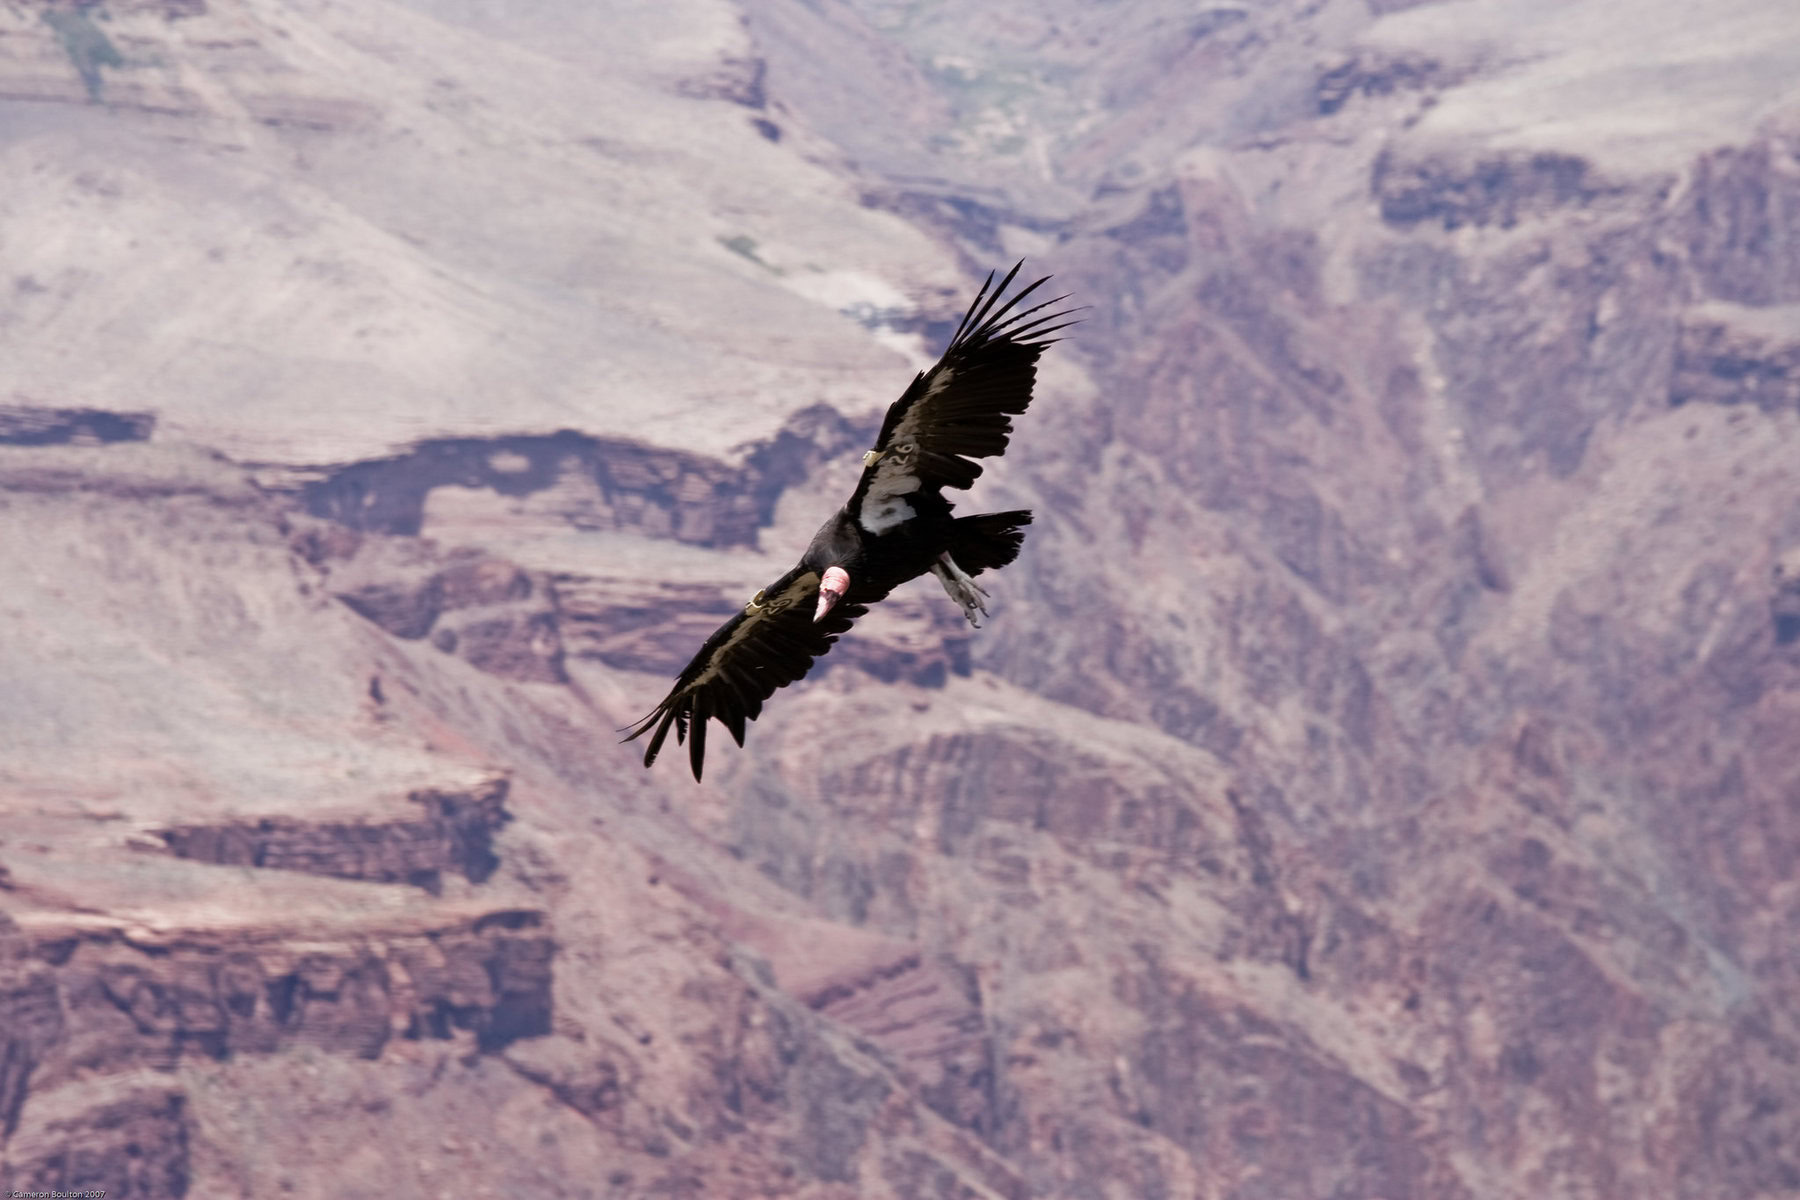 A critically endangered California condor flies over the Grand Canyon. 